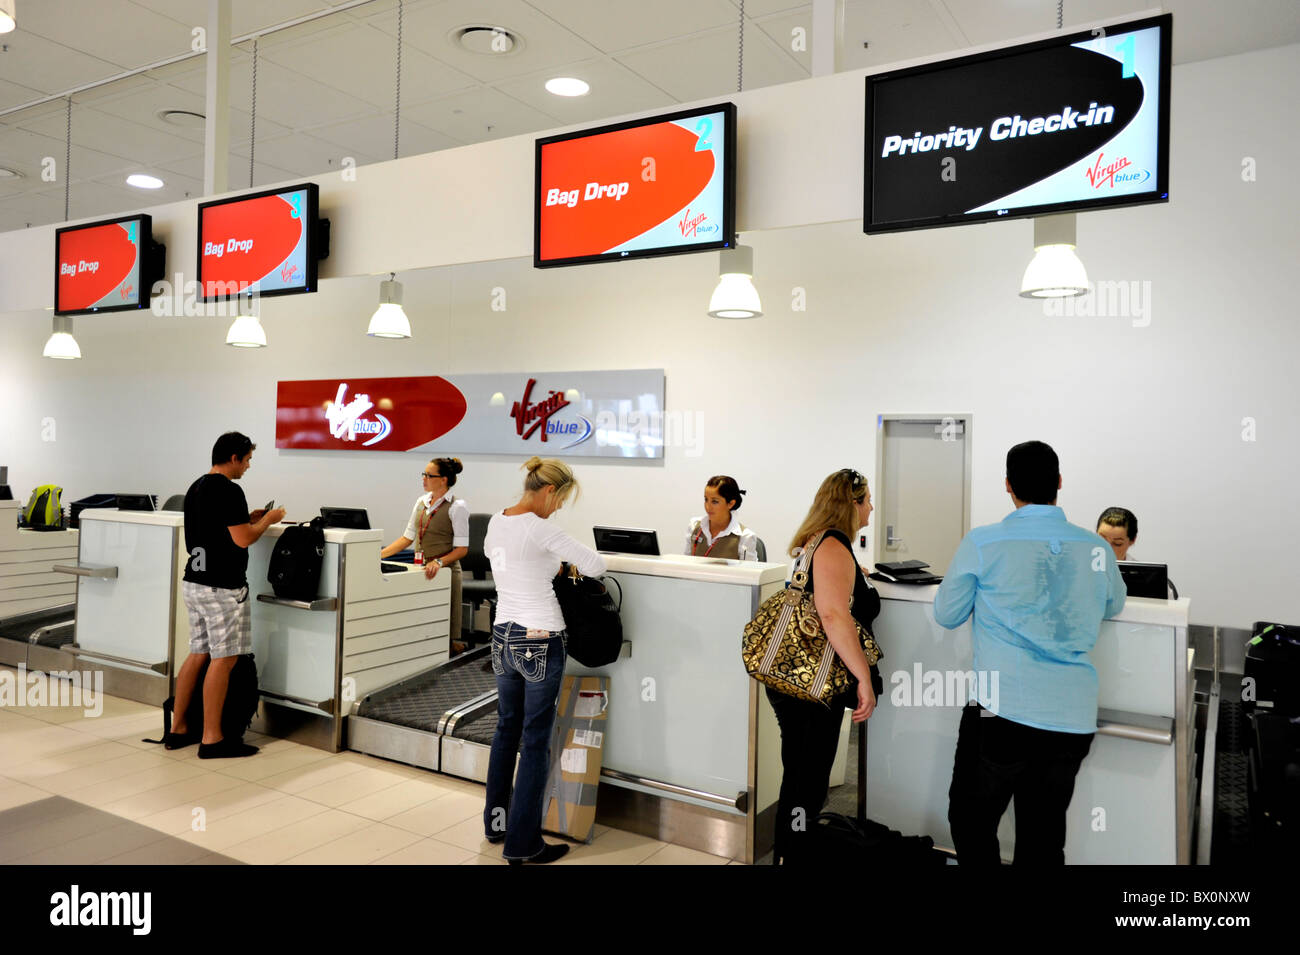 Priority Check-in am Jungfrau-Schalter am Flughafen Gold Coast Australien Stockfoto